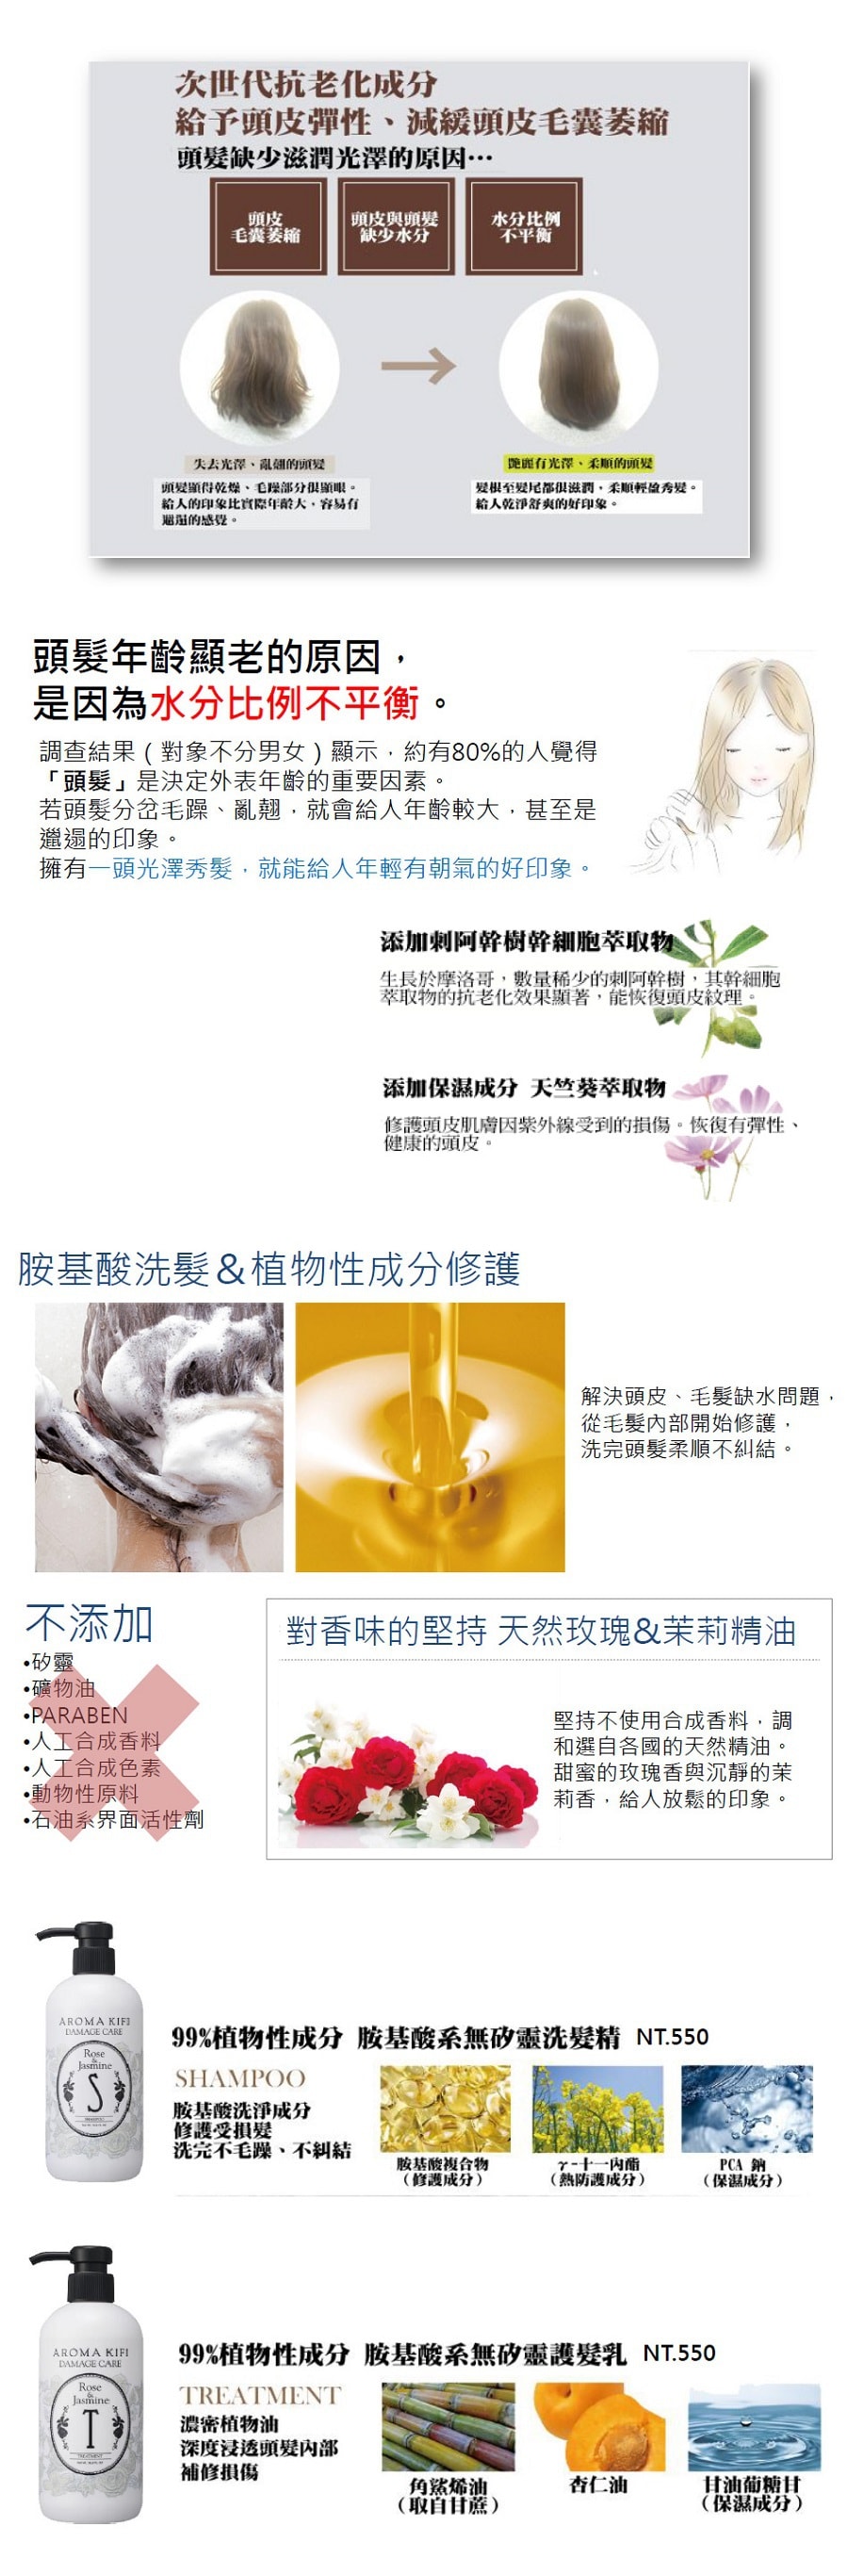 日本GAIA NP AROMA KIFI 植物成分護髮素 損傷修護型 #玫瑰茉莉香 500